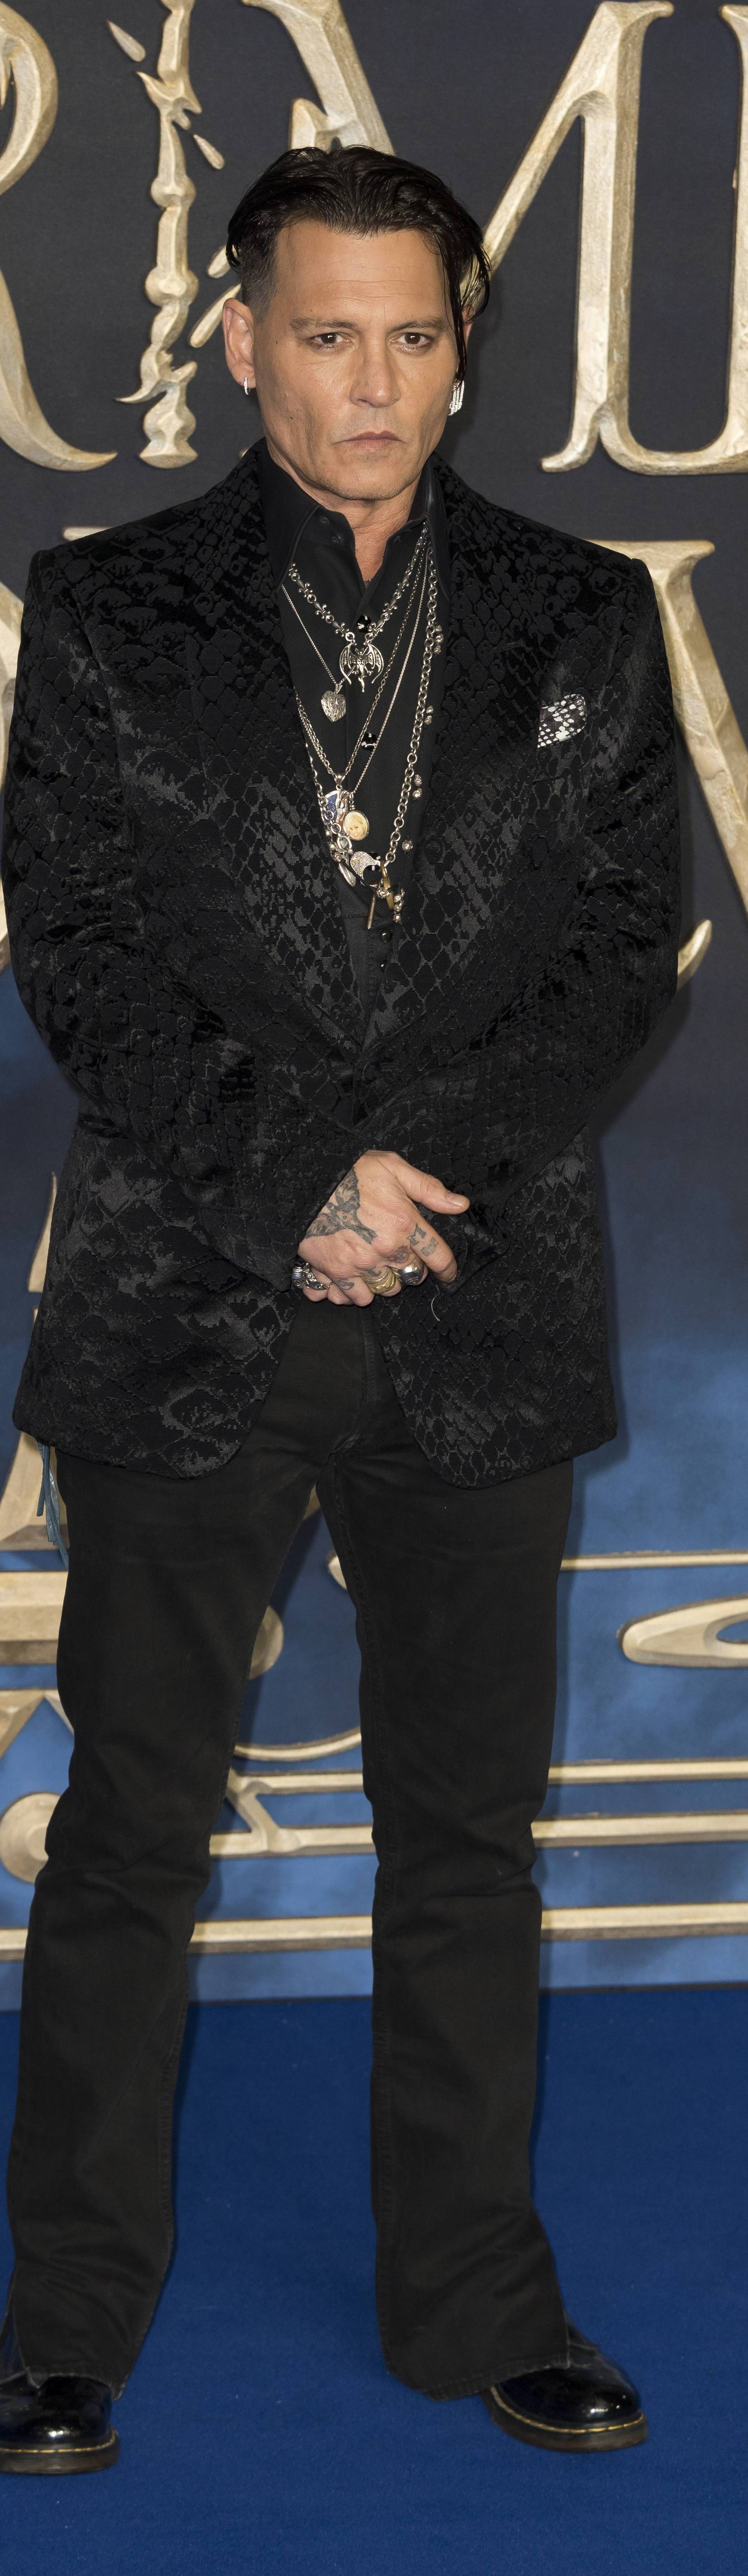 Johnny Depp attends Fantastic Beasts The Crimes of Grindelwald - UK Premiere. London, UK. 13/11/2018